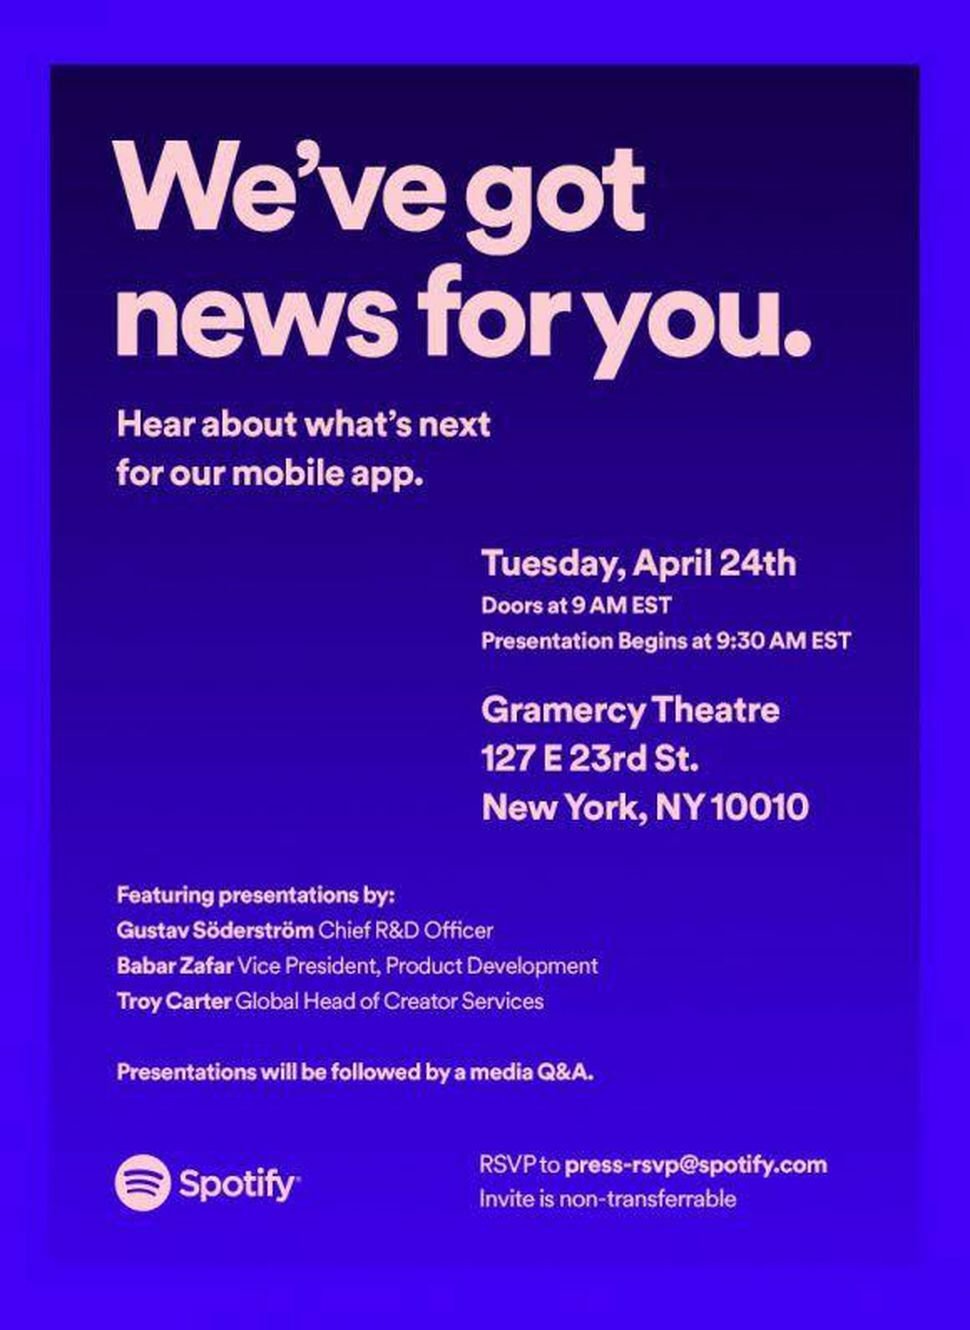 Dettagli dell'evento di Spotify organizzato a New York per il 24 aprile 2018